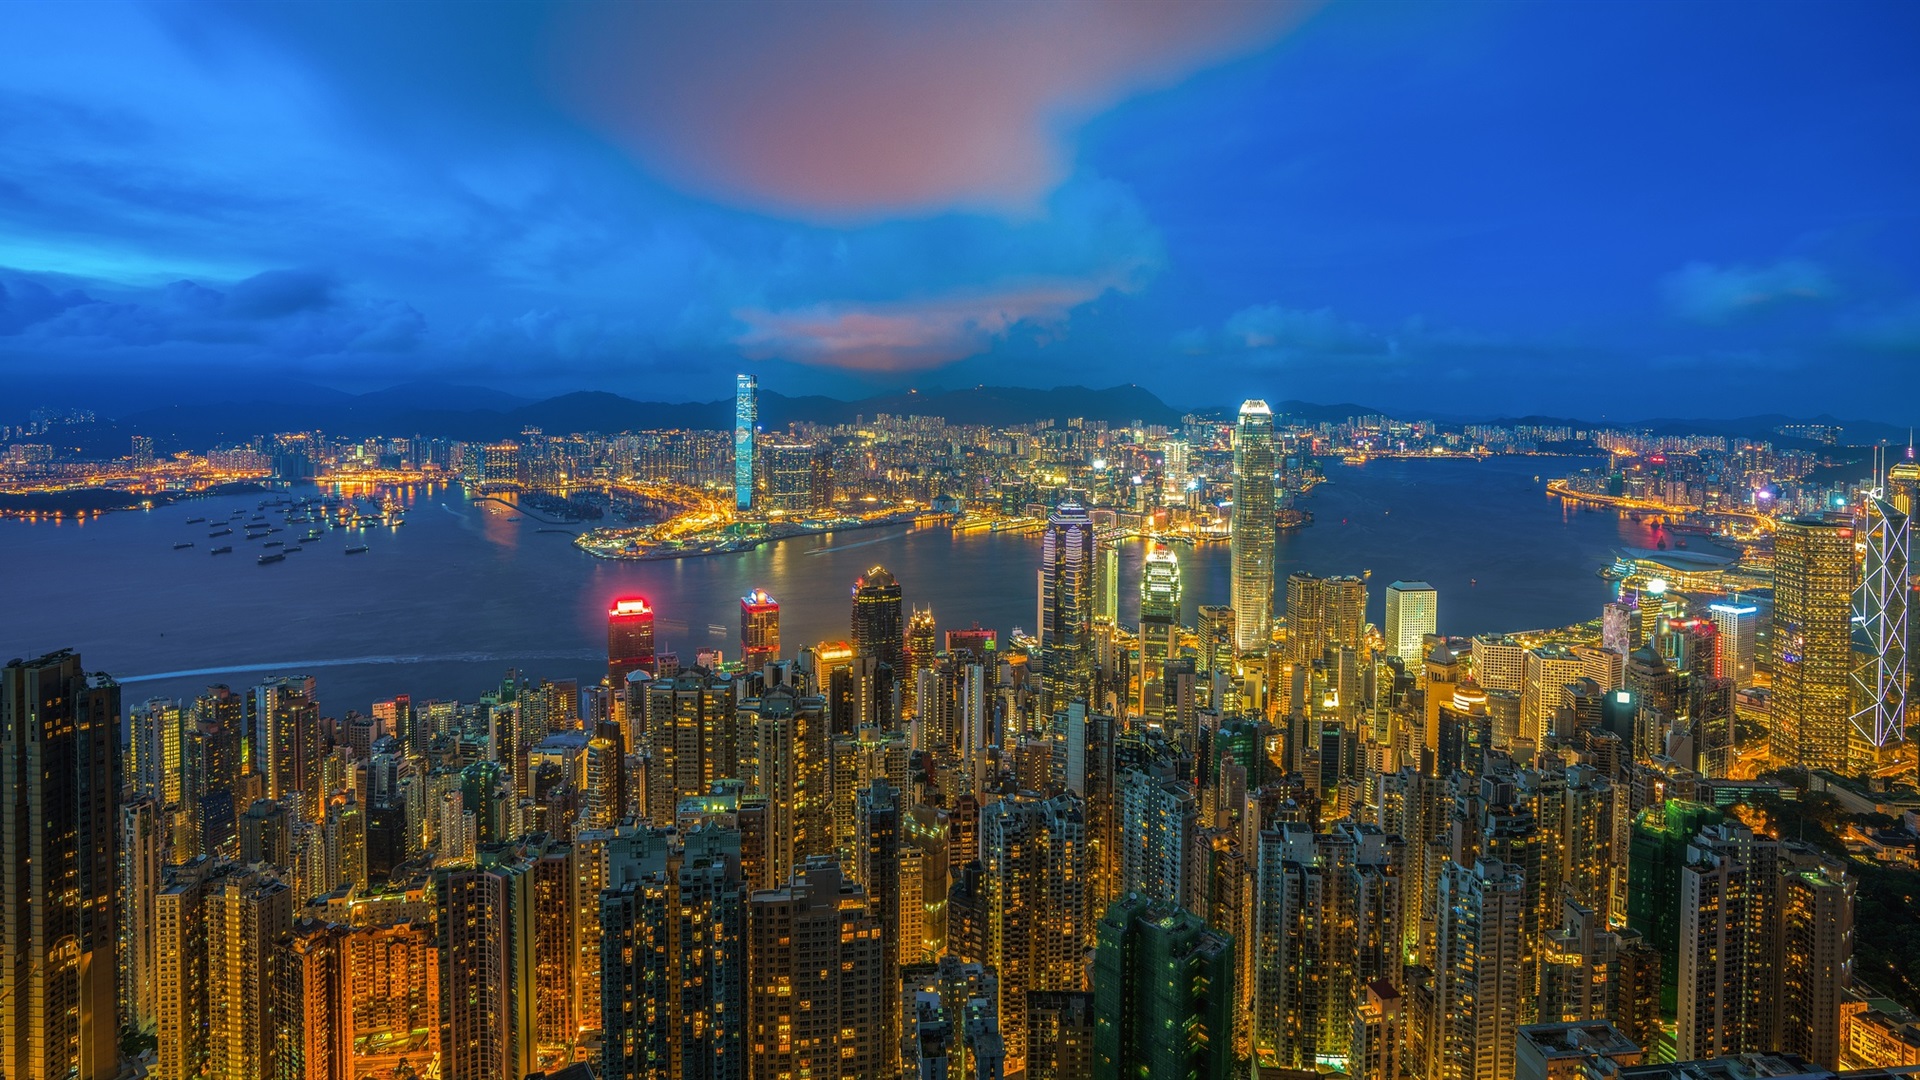 Wallpaper City Night View, Hong Kong, Skyscrapers, - Hong Kong Night Vue -  1920x1080 Wallpaper 